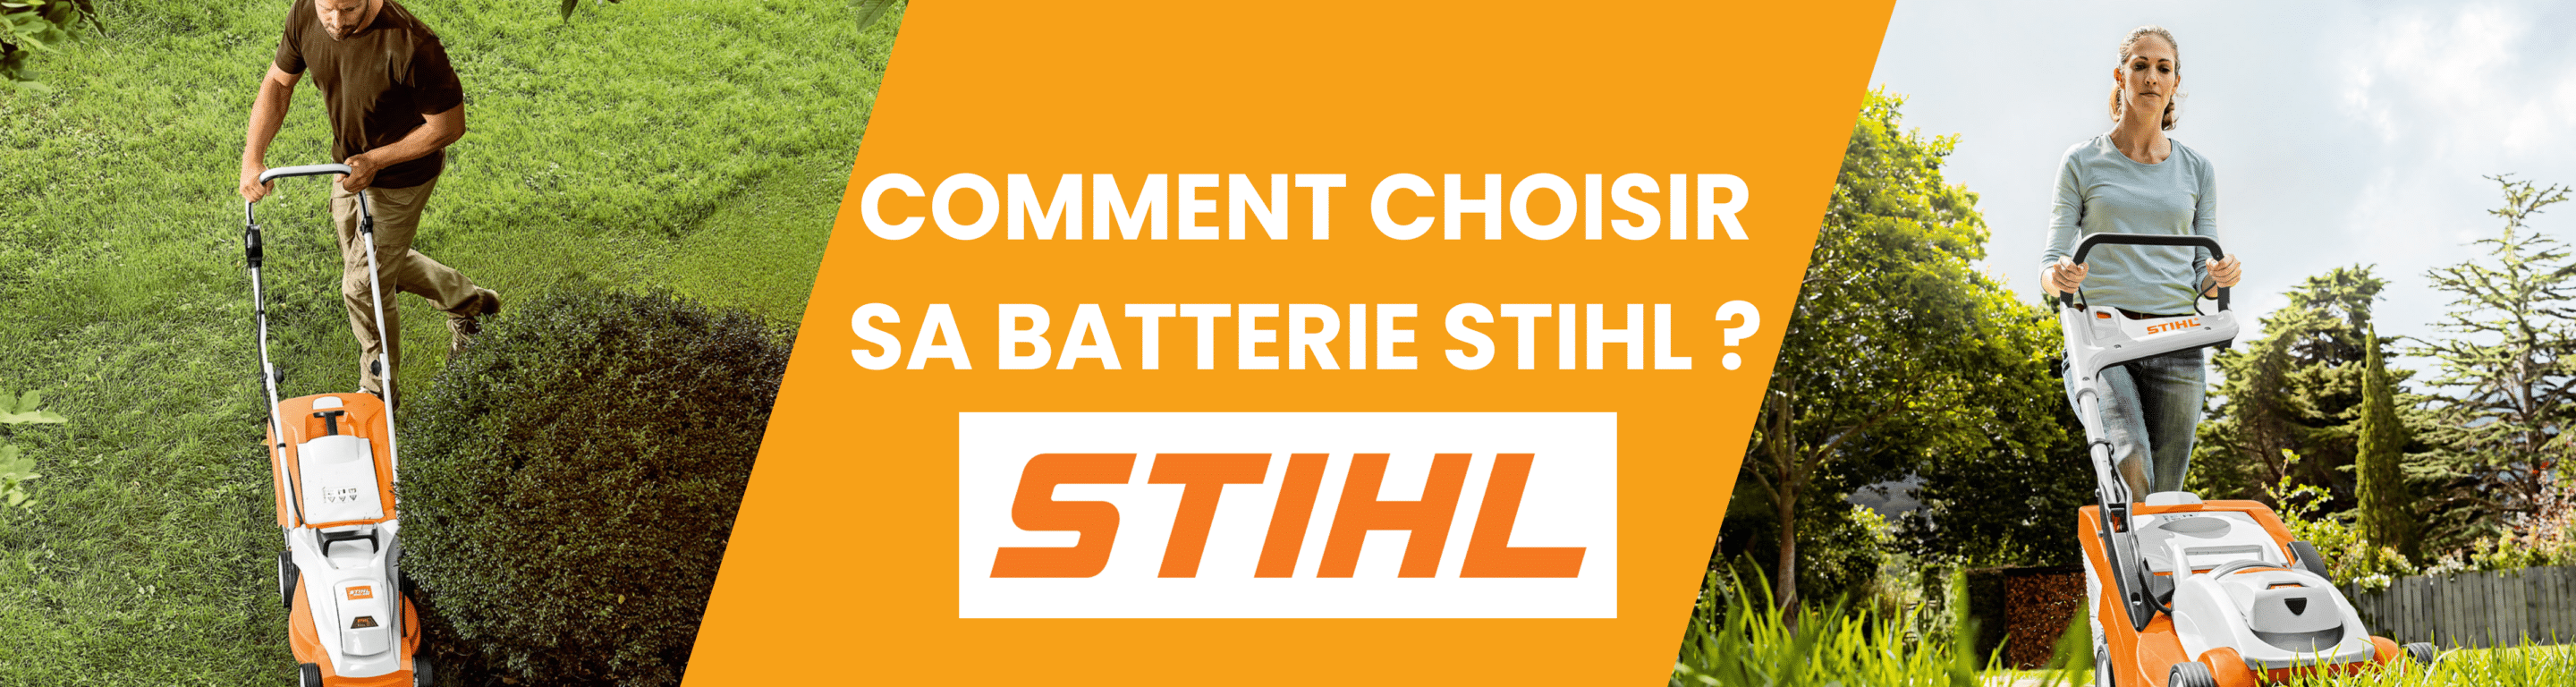 COMMENT CHOISIR SA BATTERIE STIHL - Matériel à Batterie